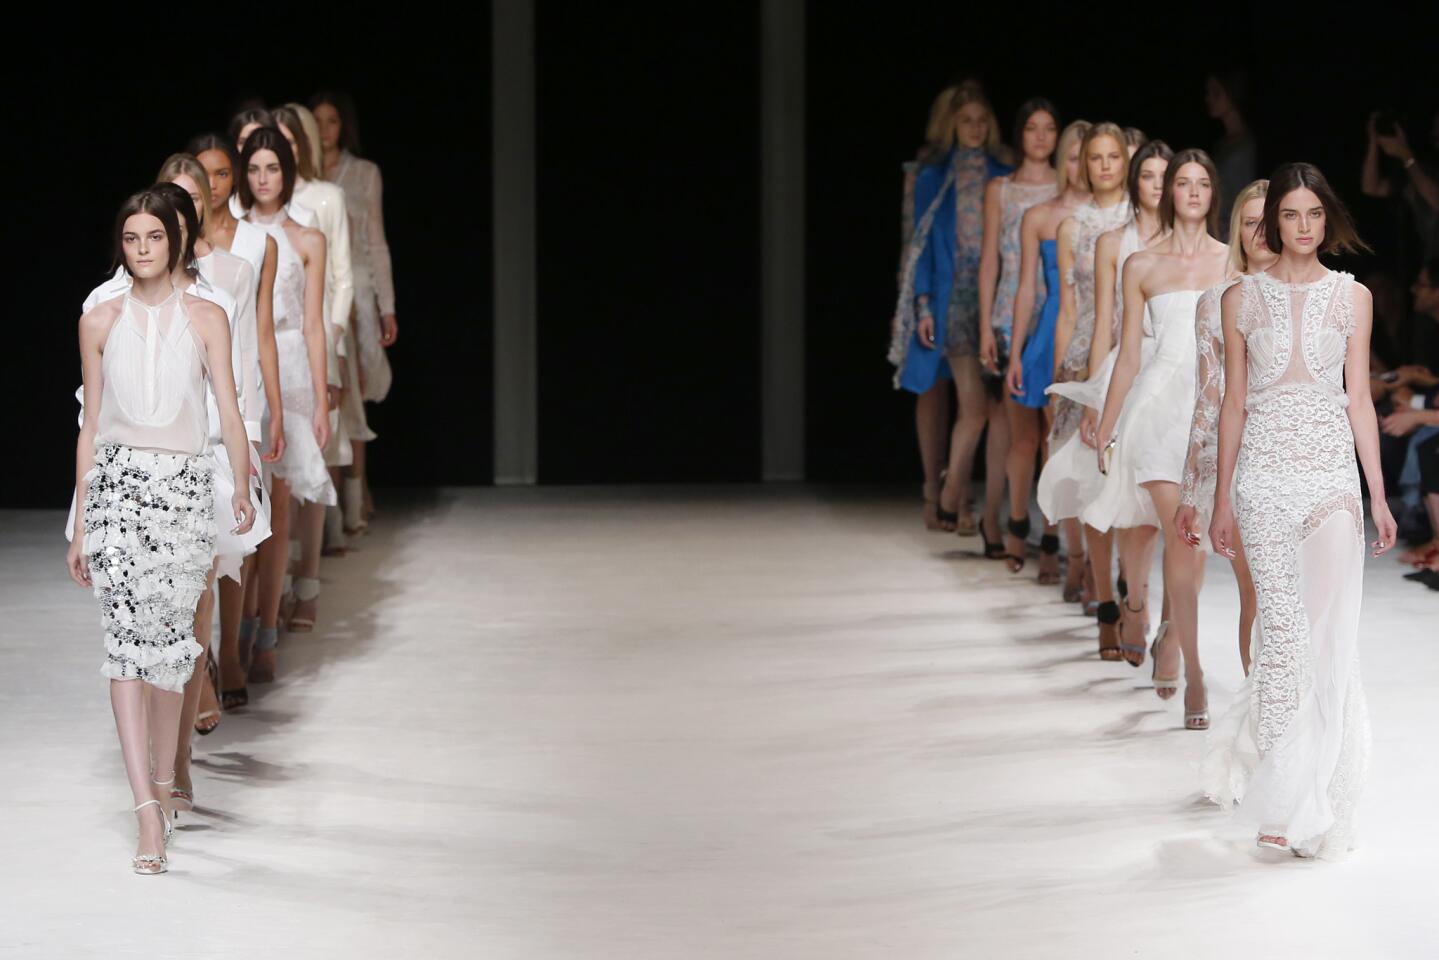 Nina Ricci's spring/summer 2014 collection at Paris Fashion Week.